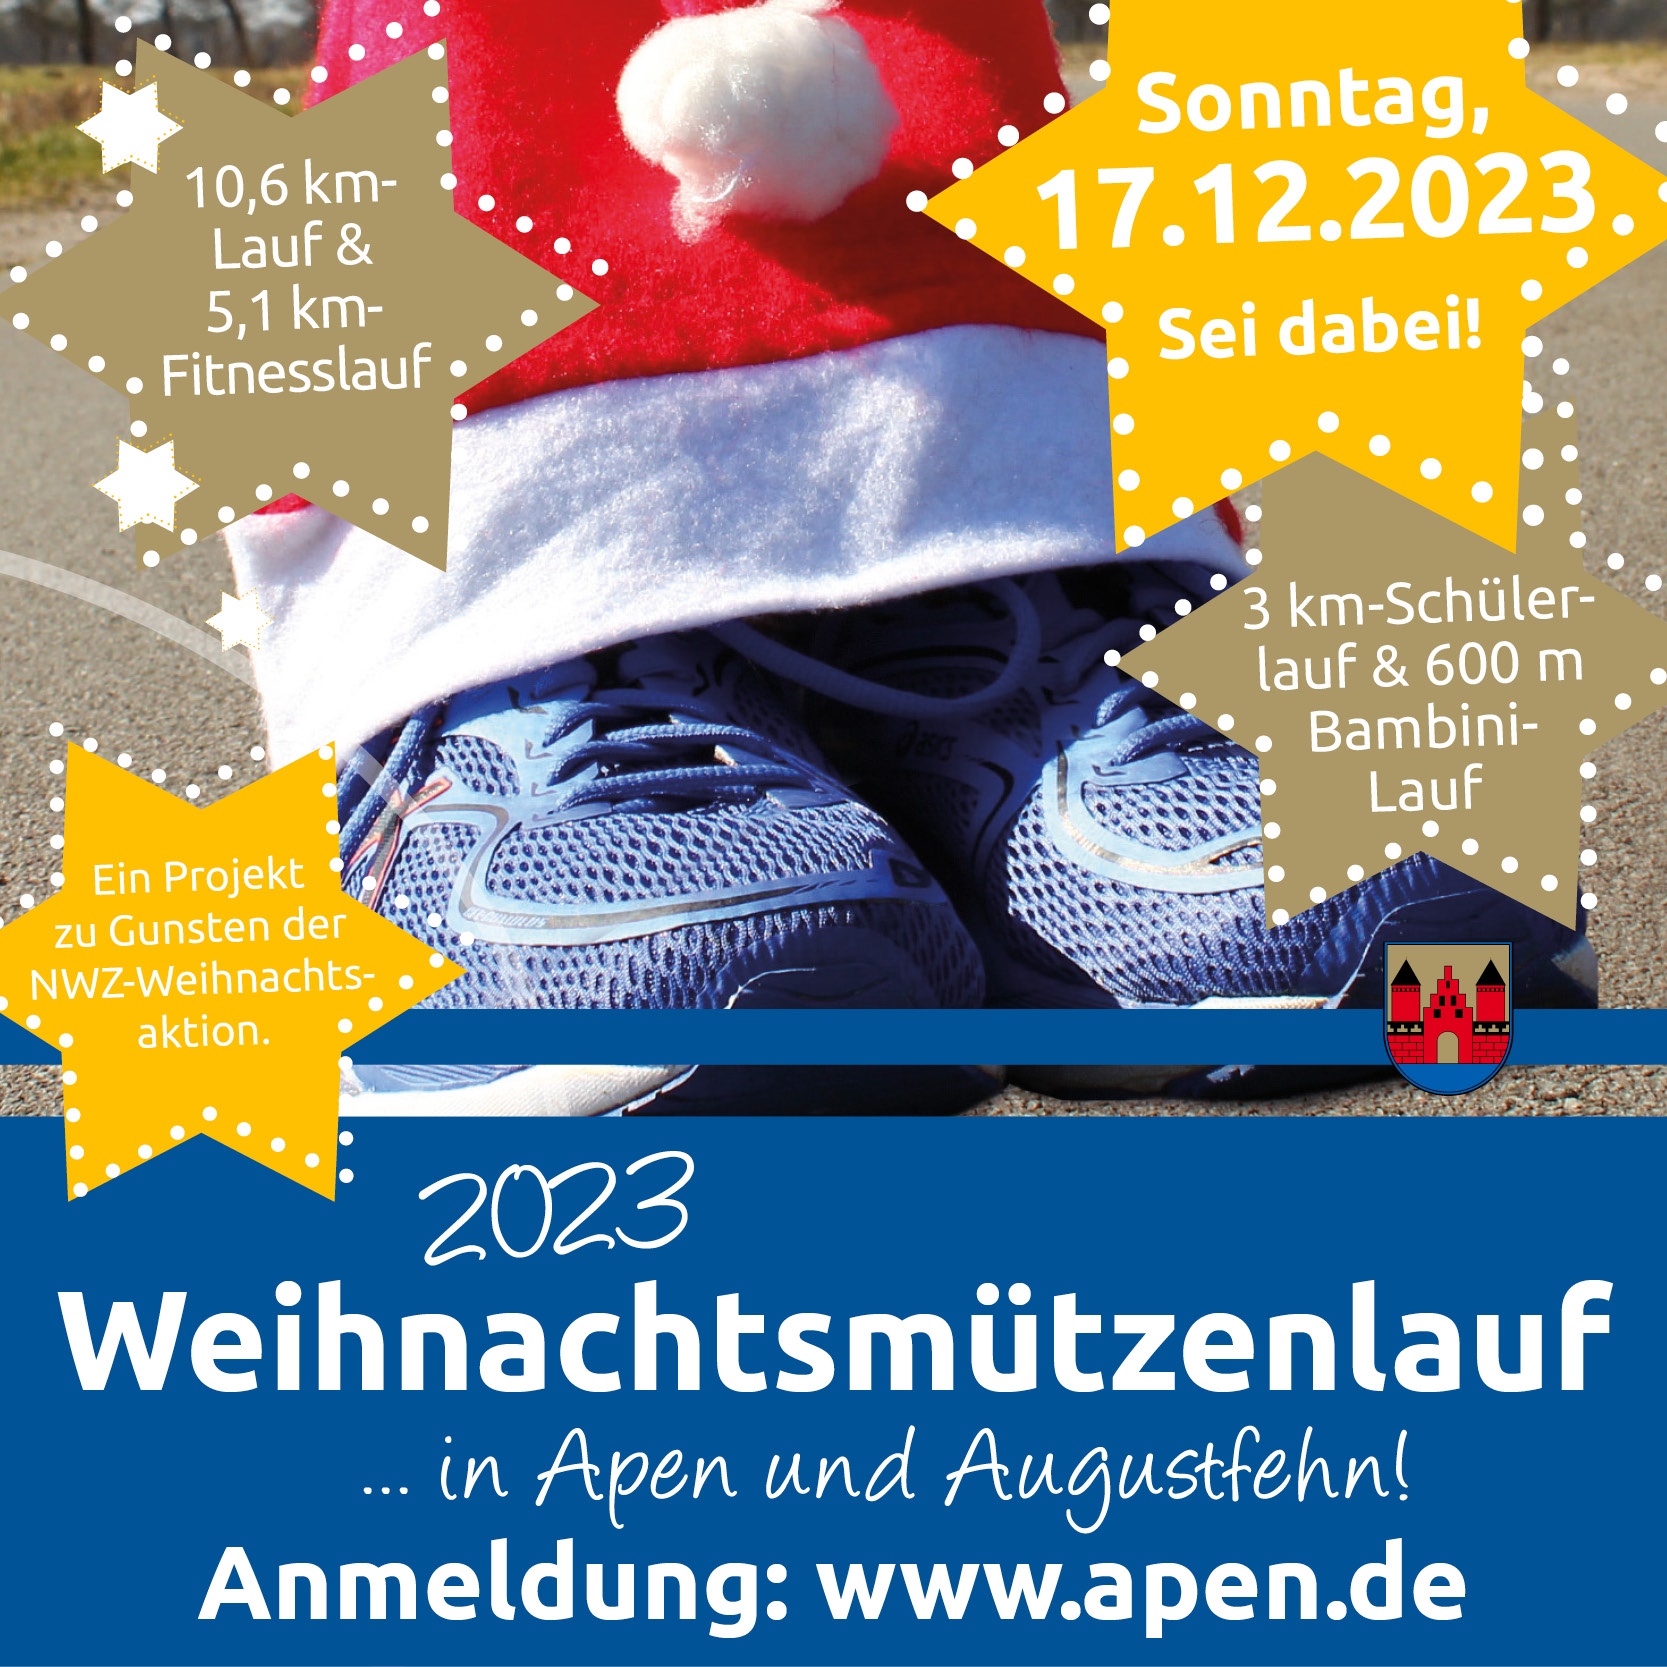 gemeinde_weihnachtsmuetzenlauf_2023.jpg